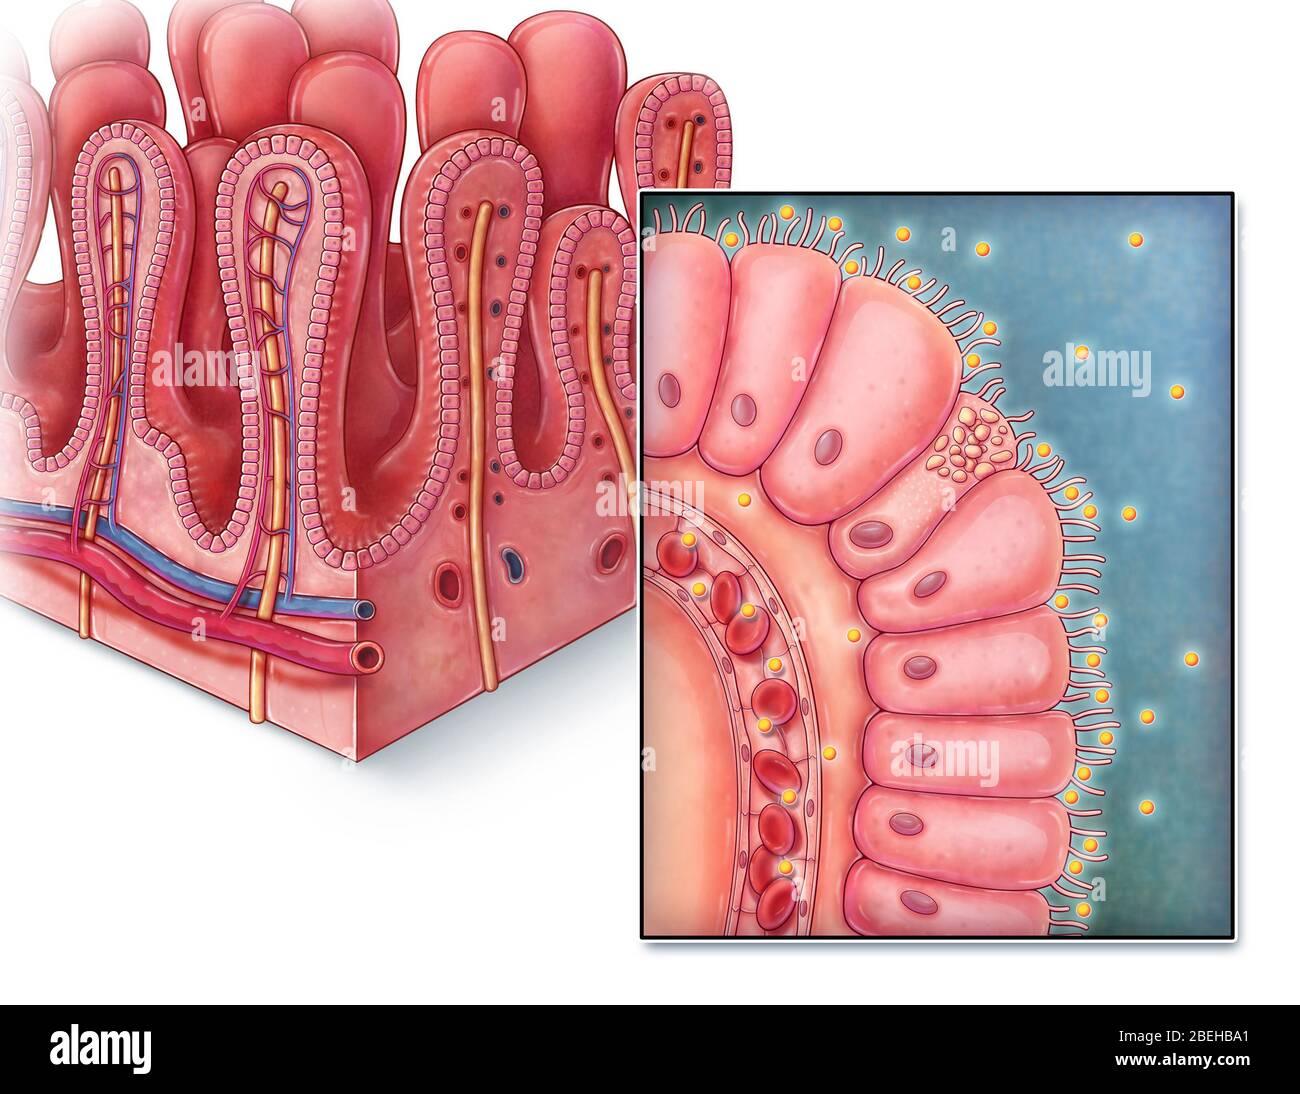 Vellosidades intestinales, ilustración Foto de stock